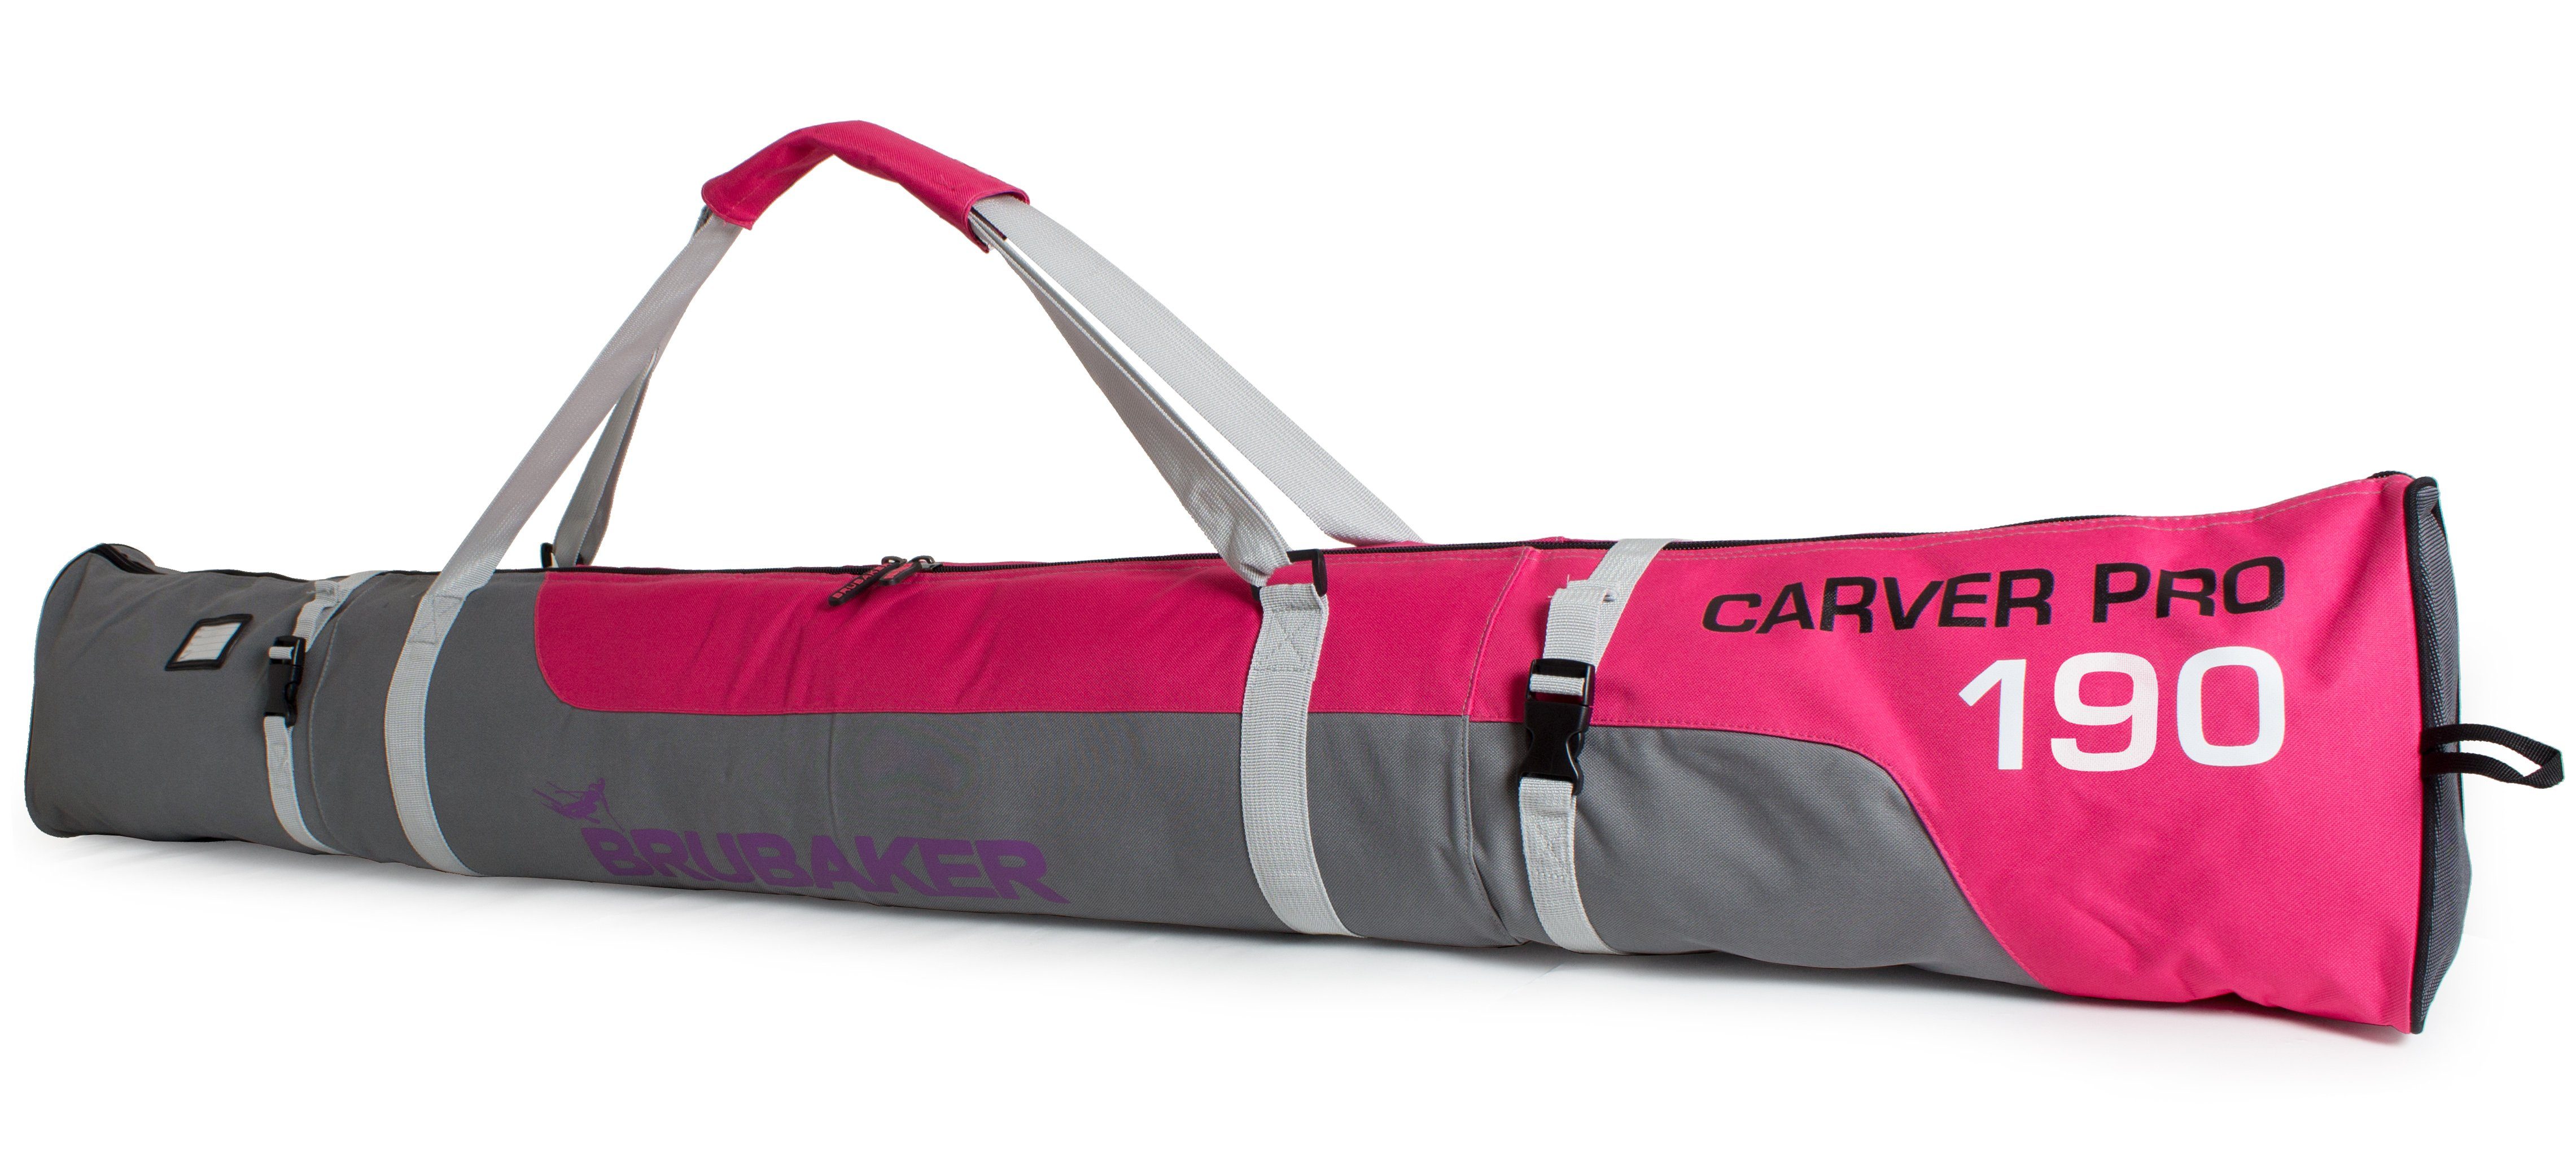 BRUBAKER Skitasche Carver Pro Ski Tasche - Pink und Grau (Skibag für Skier und Skistöcke, 1-tlg., reißfest und schnittfest), gepolsterter Skisack mit Zipperverschluss